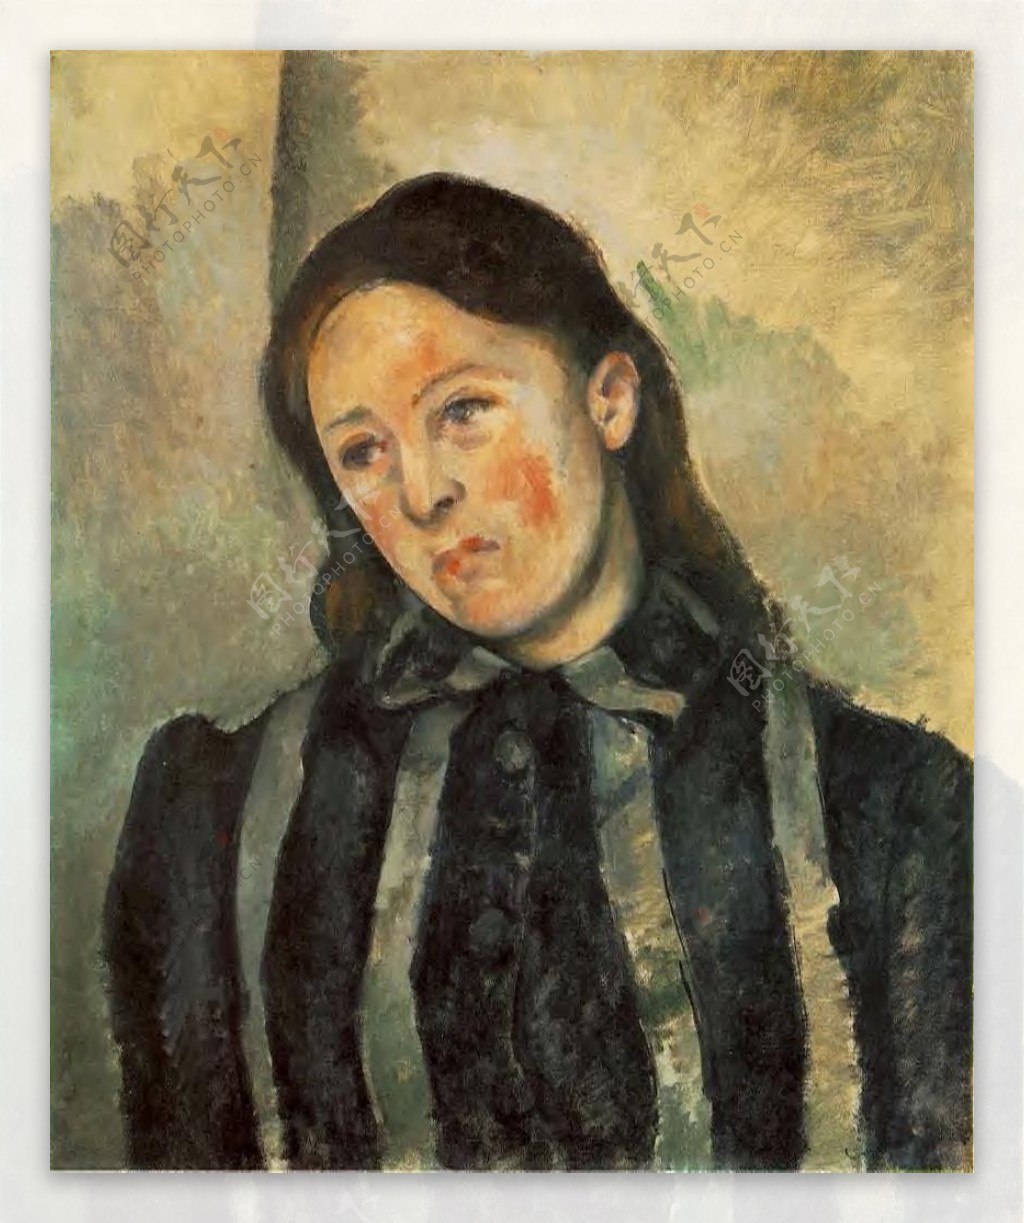 PaulCzanne0056法国画家保罗塞尚paulcezanne后印象派新印象派人物风景肖像静物油画装饰画